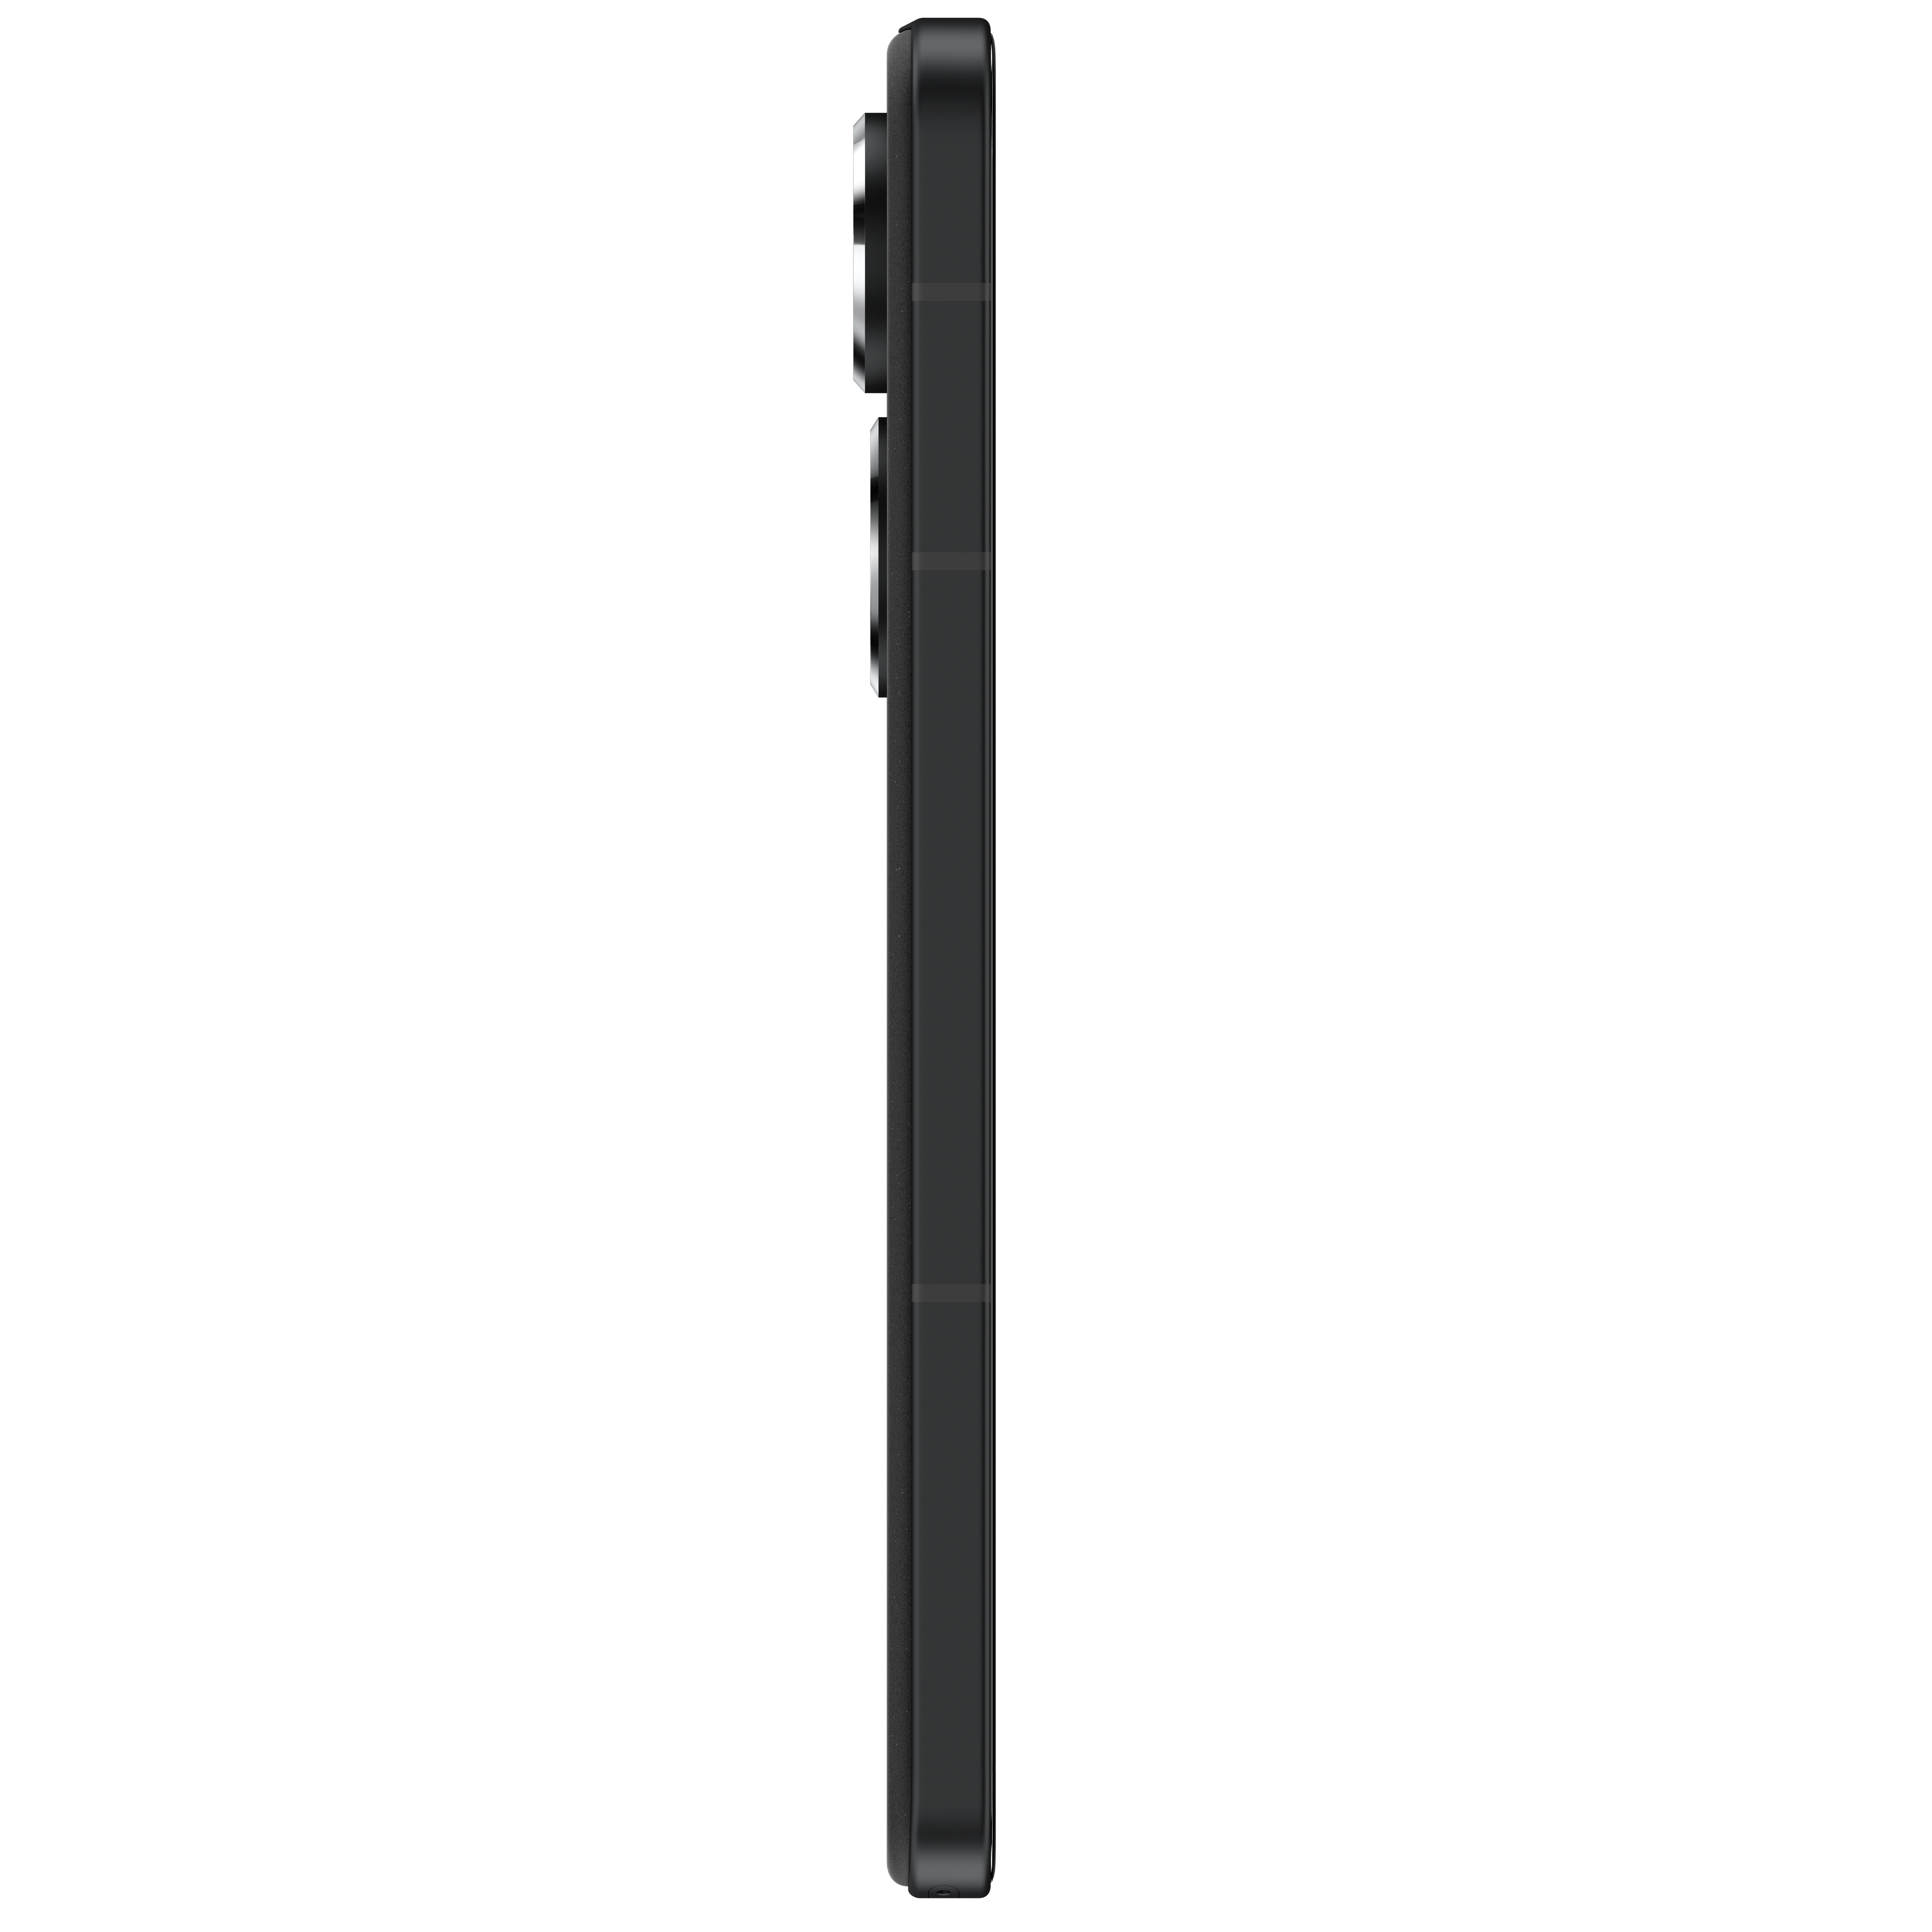 ASUS Zenfone Dual GB SIM 9 256 Midnight Black